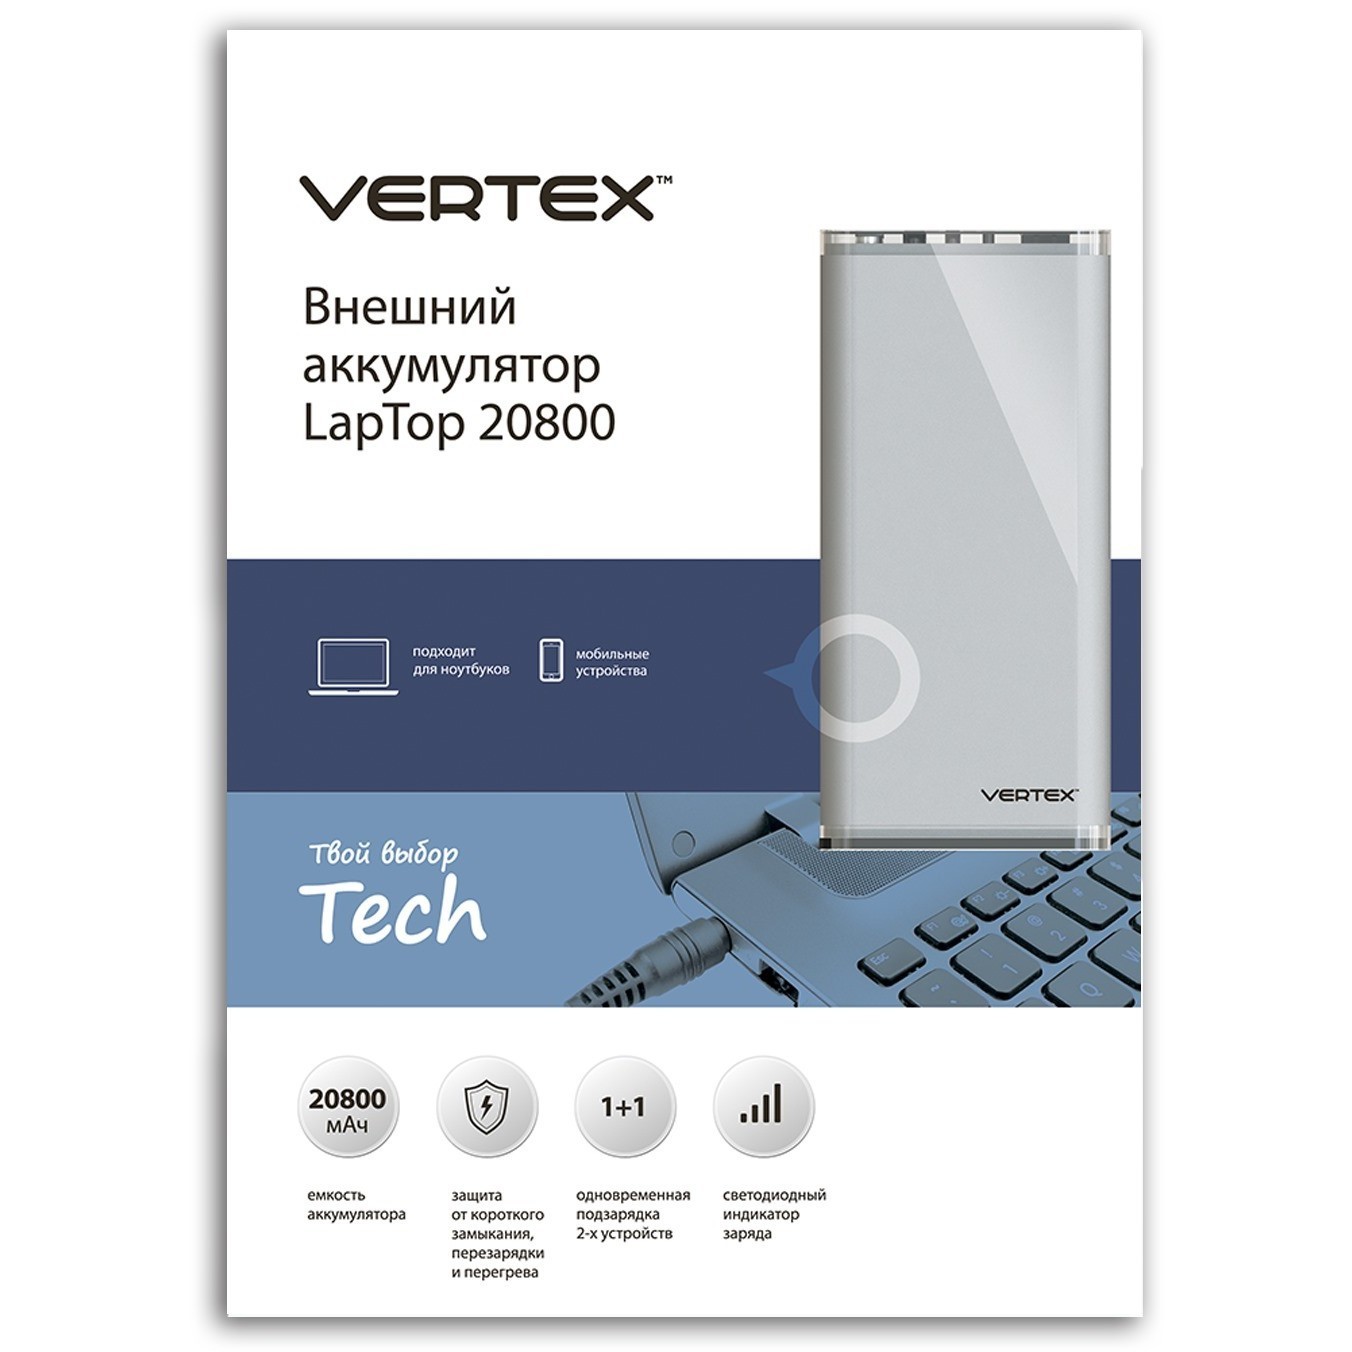 Vertex Laptop 20800. Vertex Power Bank. Производитель вертекс отзывы